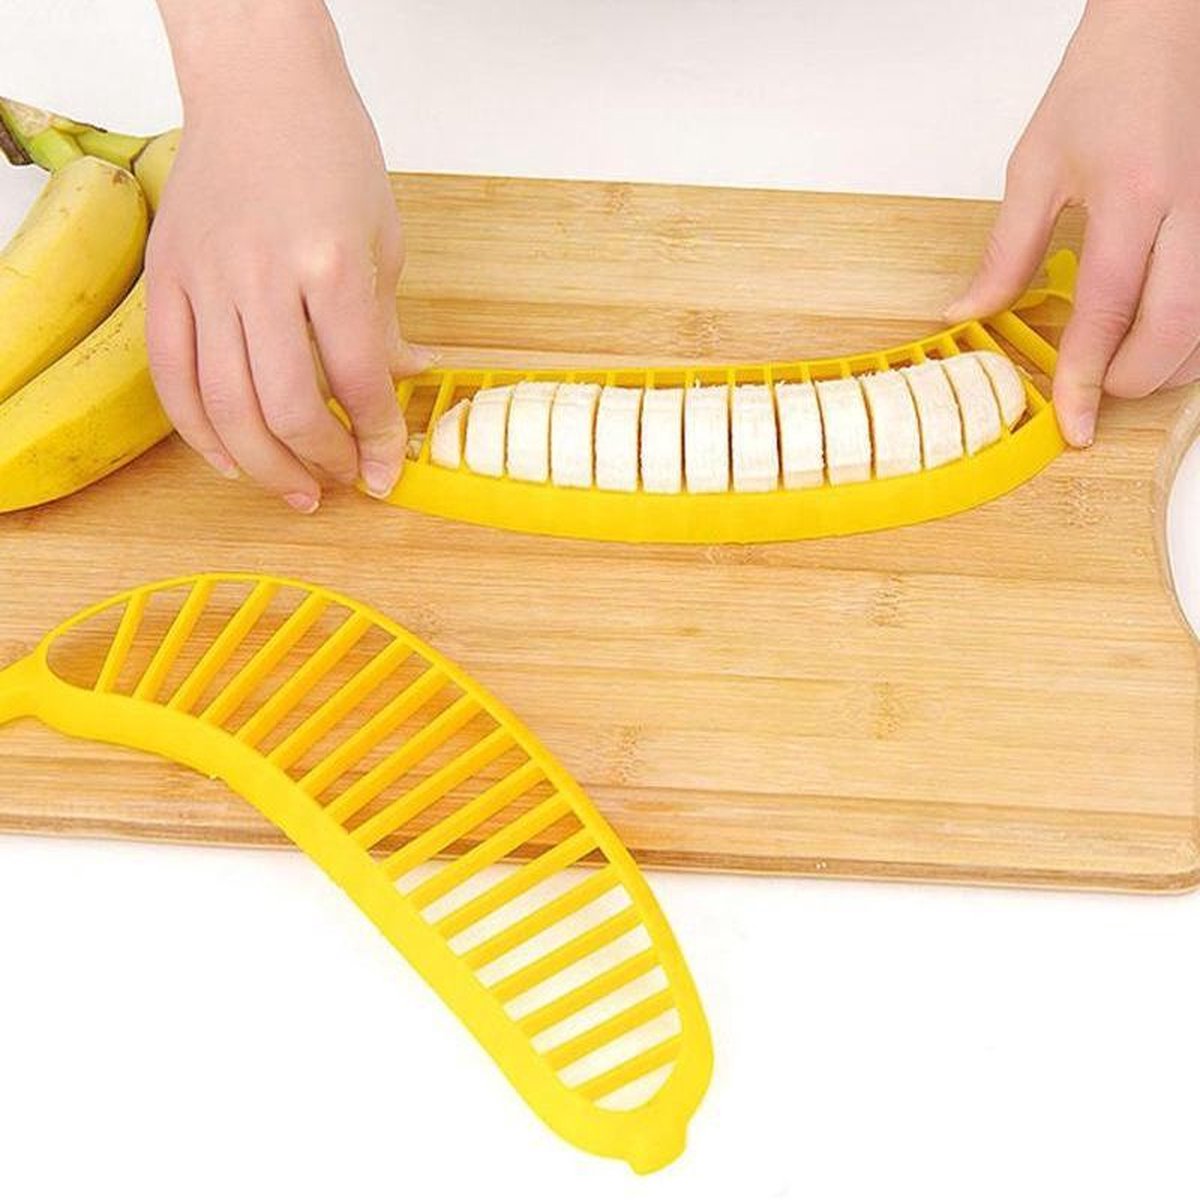 3 Bananen Snijder - Keuken Gadget - Fruit Snijder - Accesoires - Bananensnijder - Fruitsalade